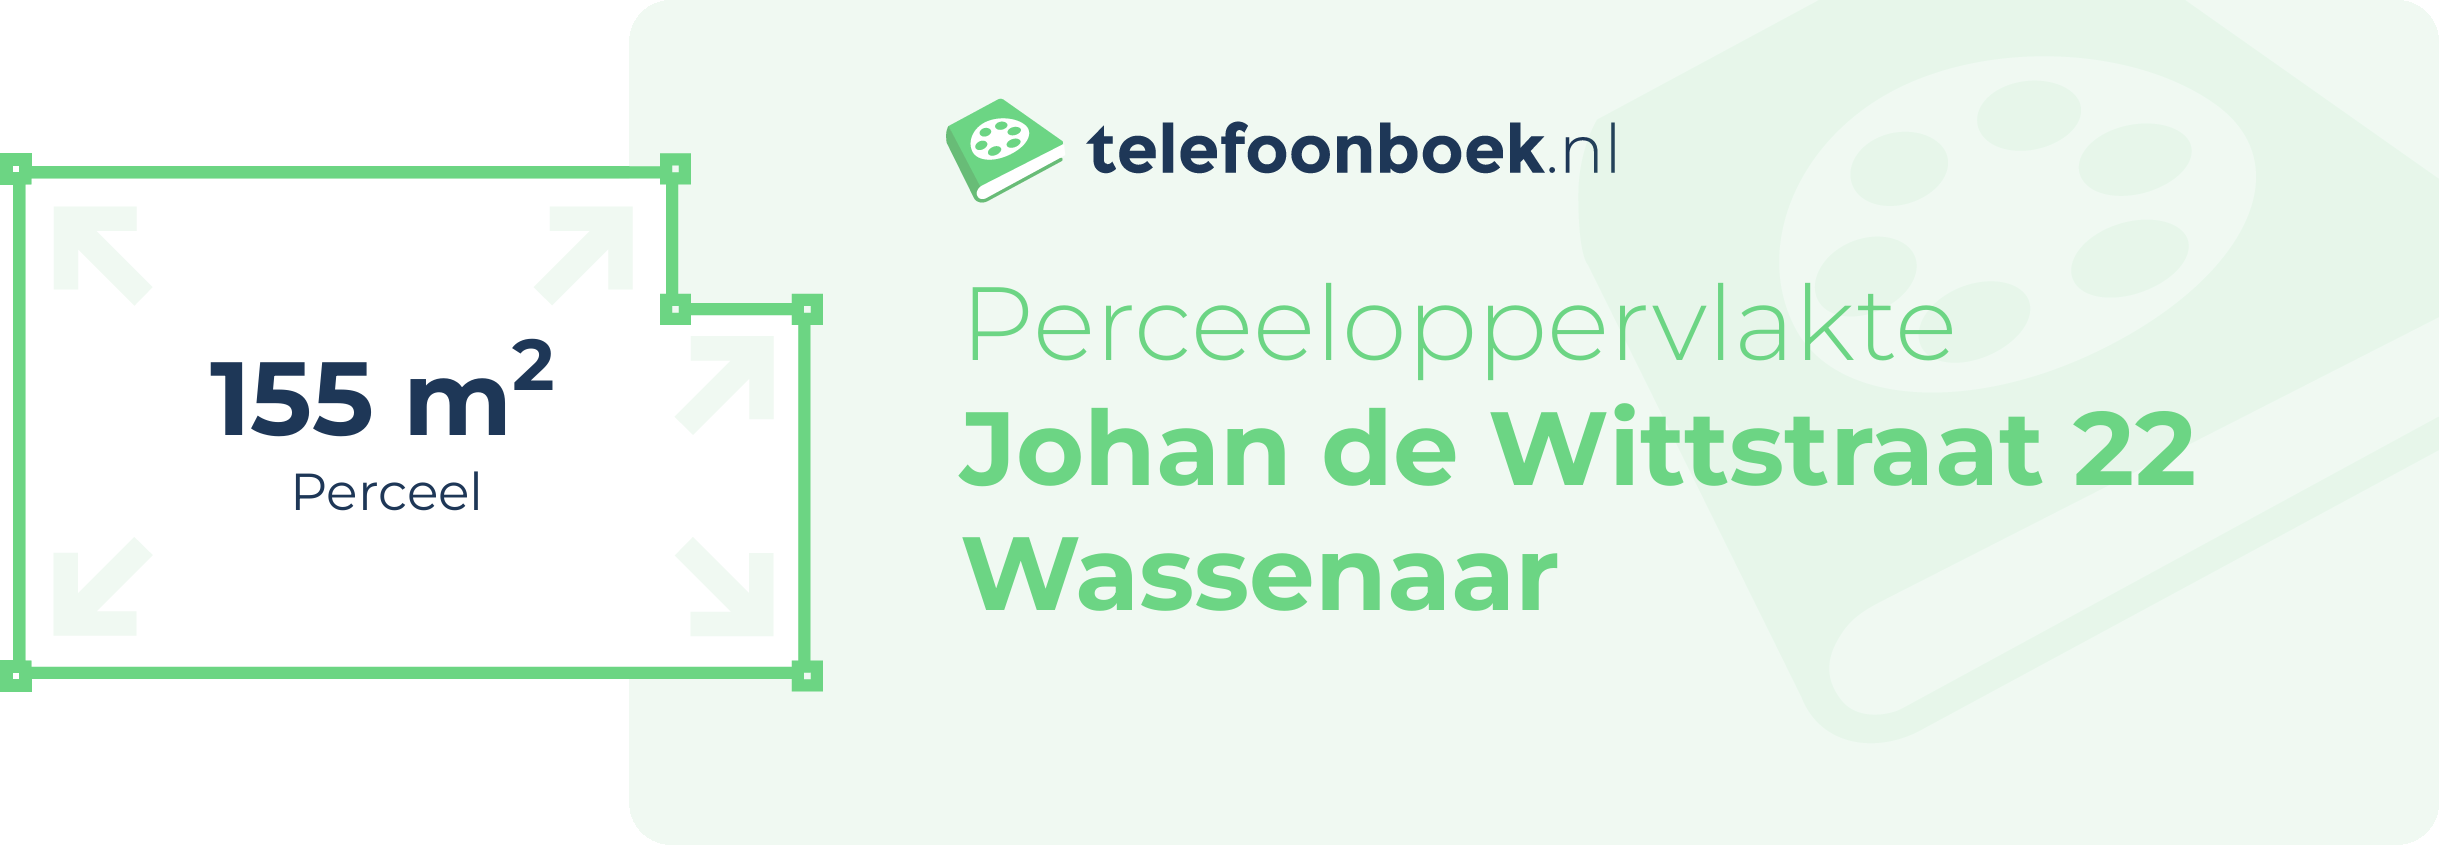 Perceeloppervlakte Johan De Wittstraat 22 Wassenaar